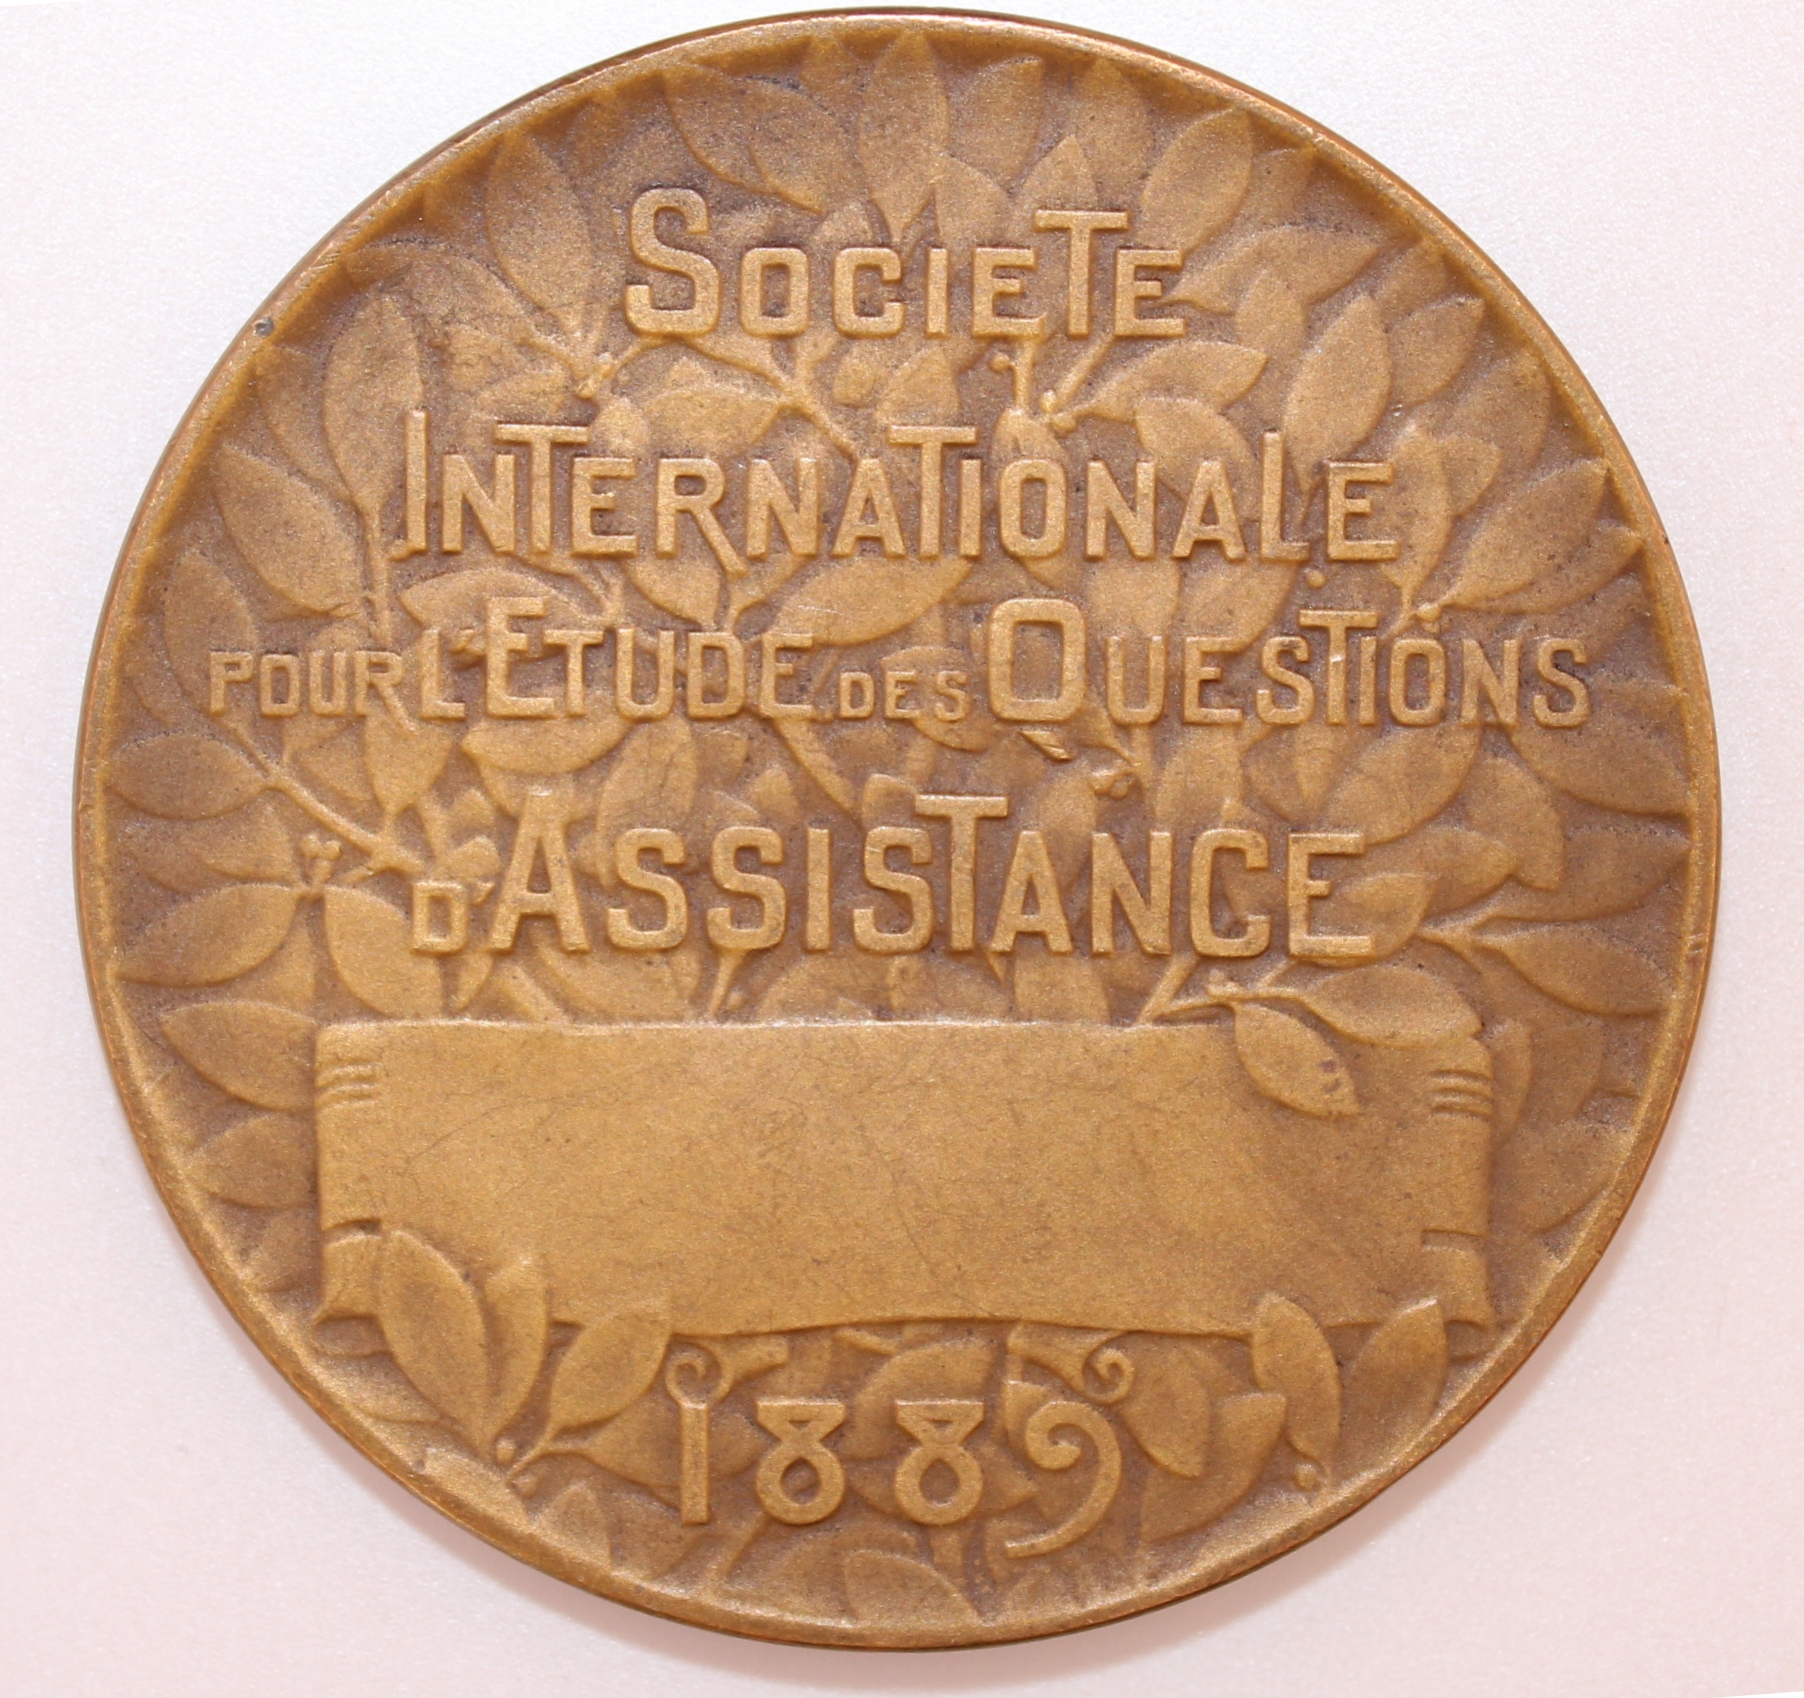 La Société internationale pour l’étude des questions d’assistance : Une médaille d’Alexandre Morlon de 1909